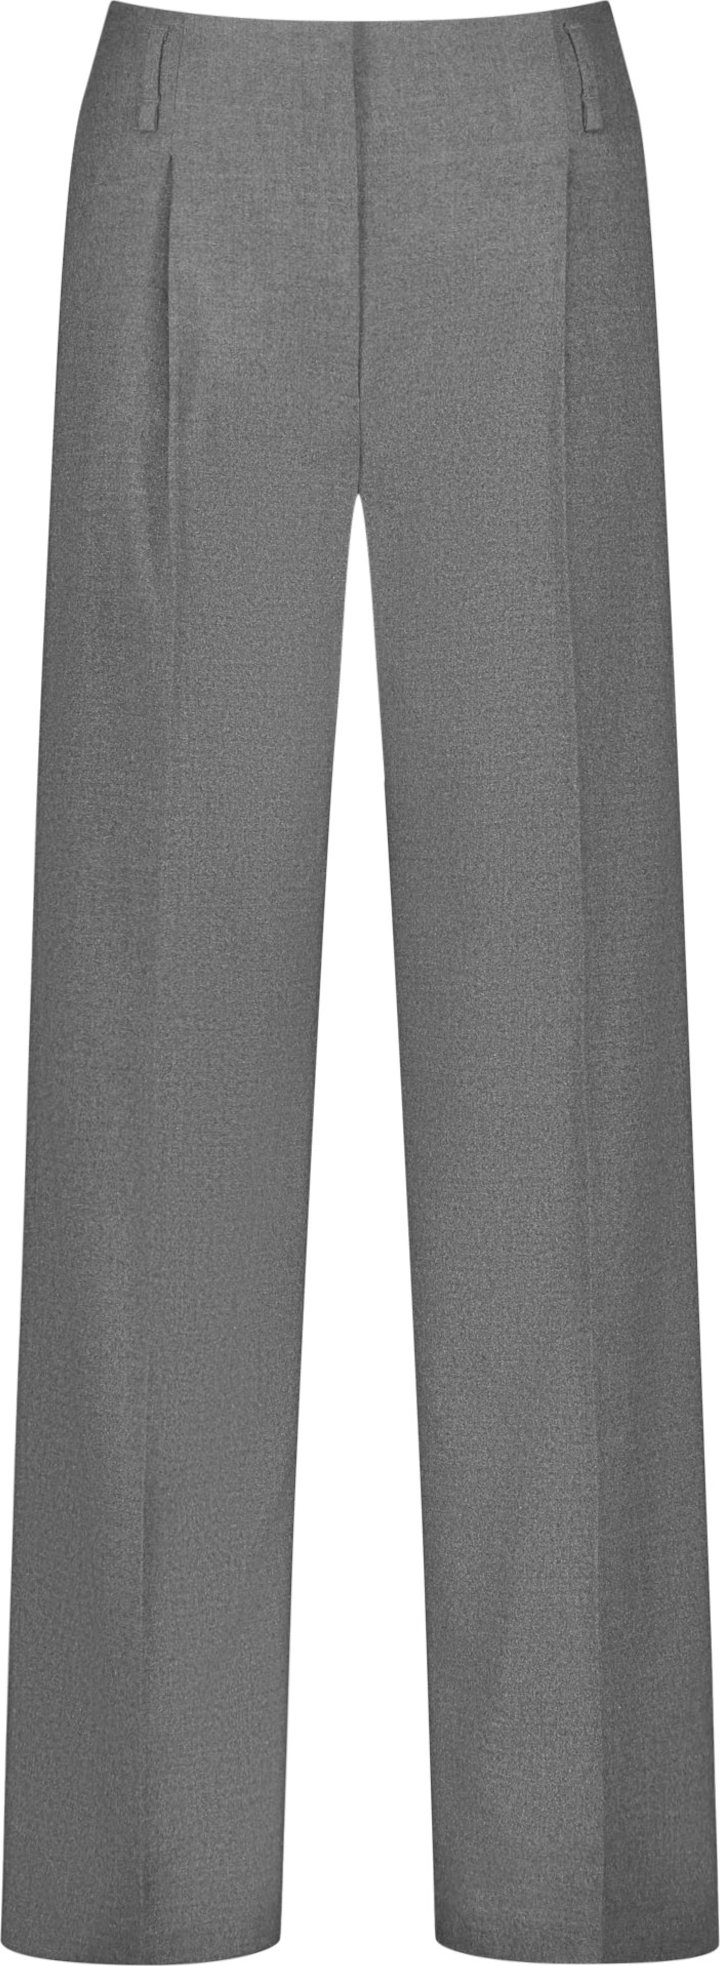 GERRY WEBER Kalhoty s puky šedý melír